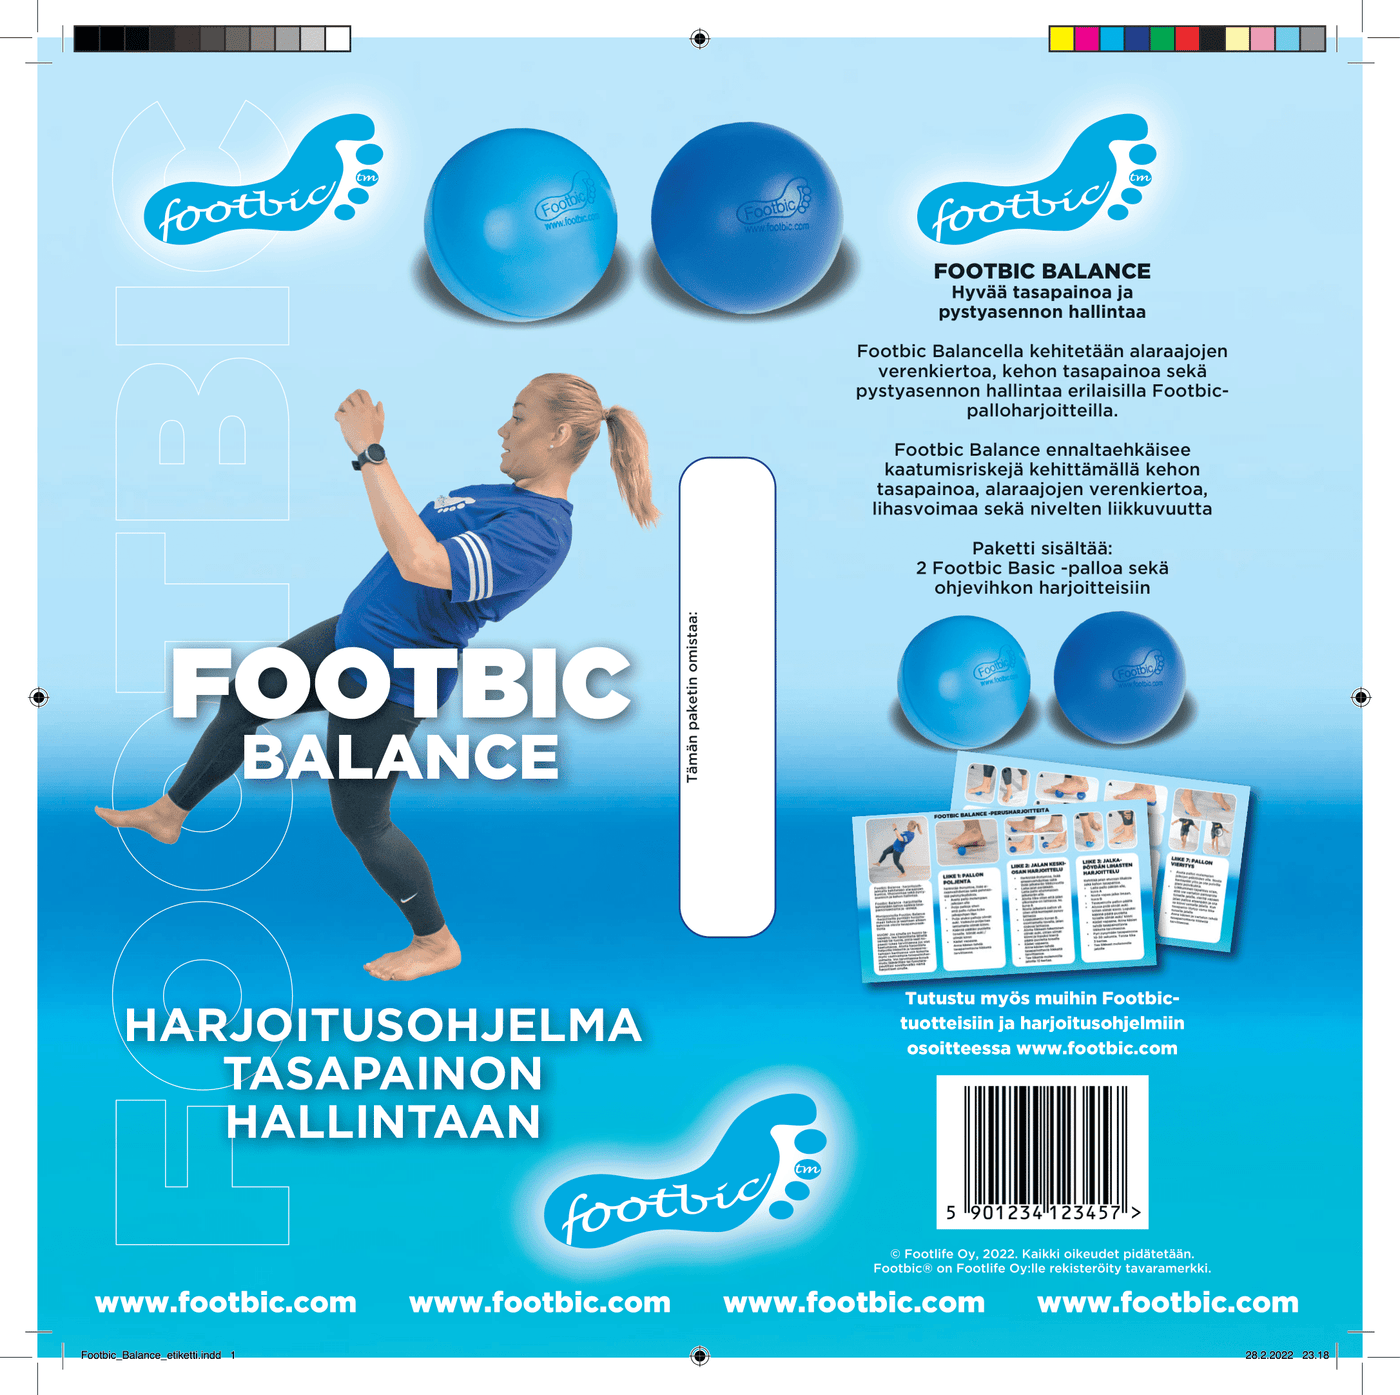 Footbic Balance -Harjoitusohjelma - Apteekki 360 Helsinki - Verkkoapteekki